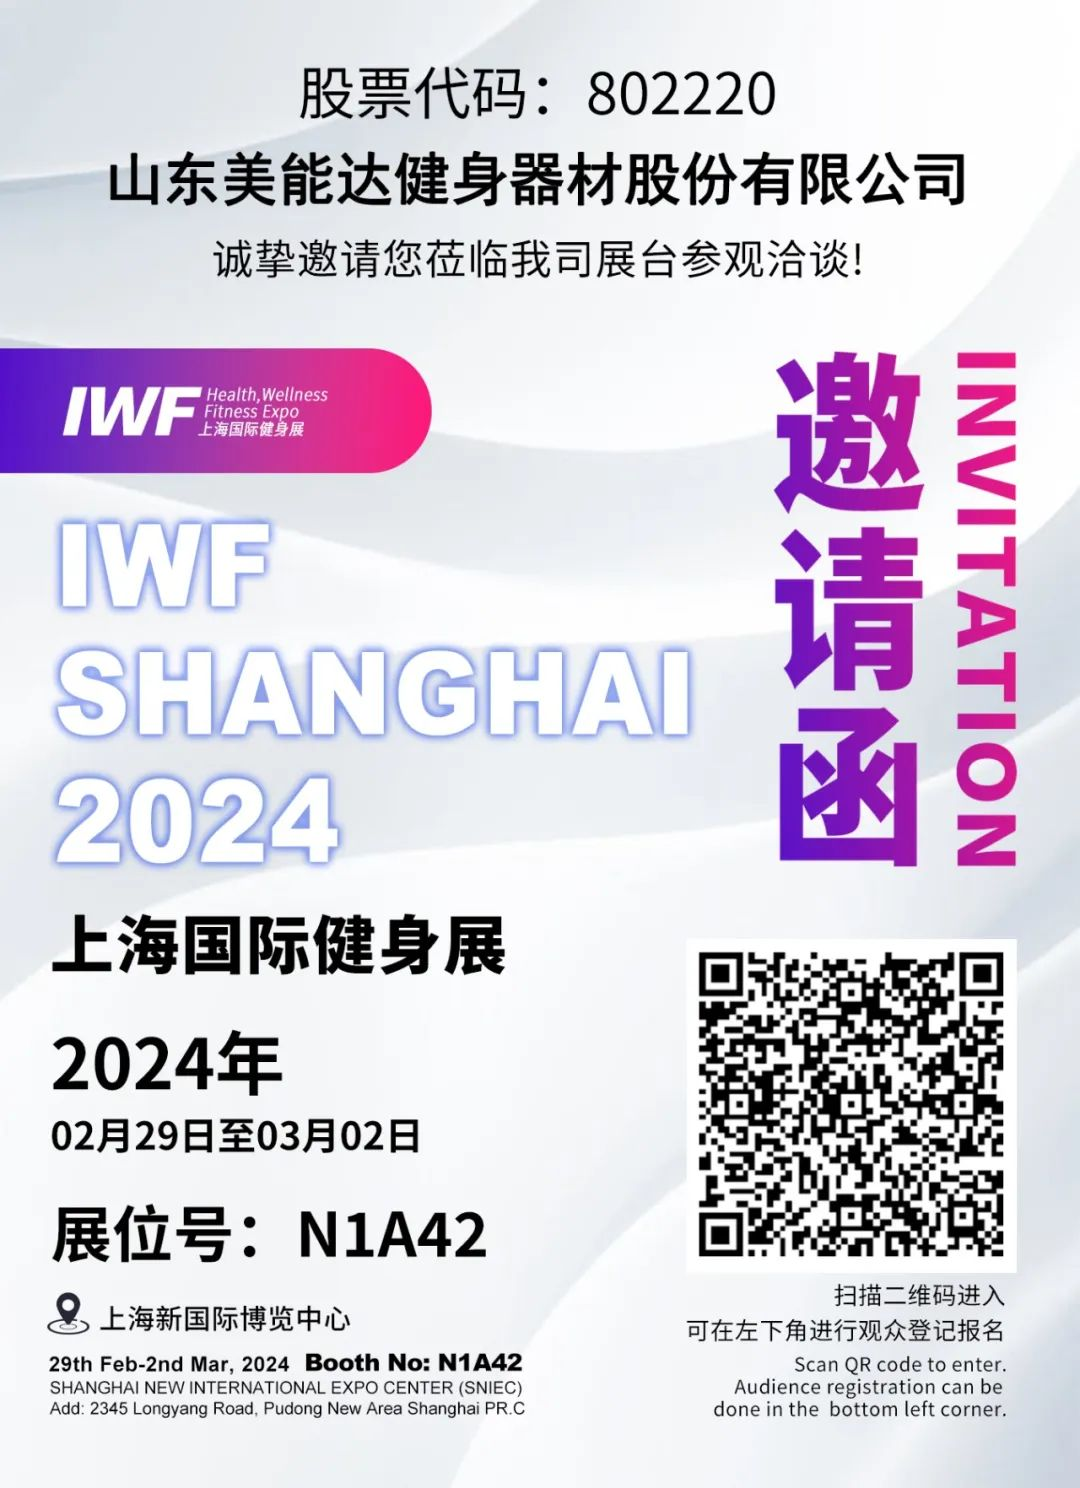 Minolta vás srdečně zve k návštěvě stánku N1A42 k vyjednávání na mezinárodní výstavě fitness v Šanghaji 2024